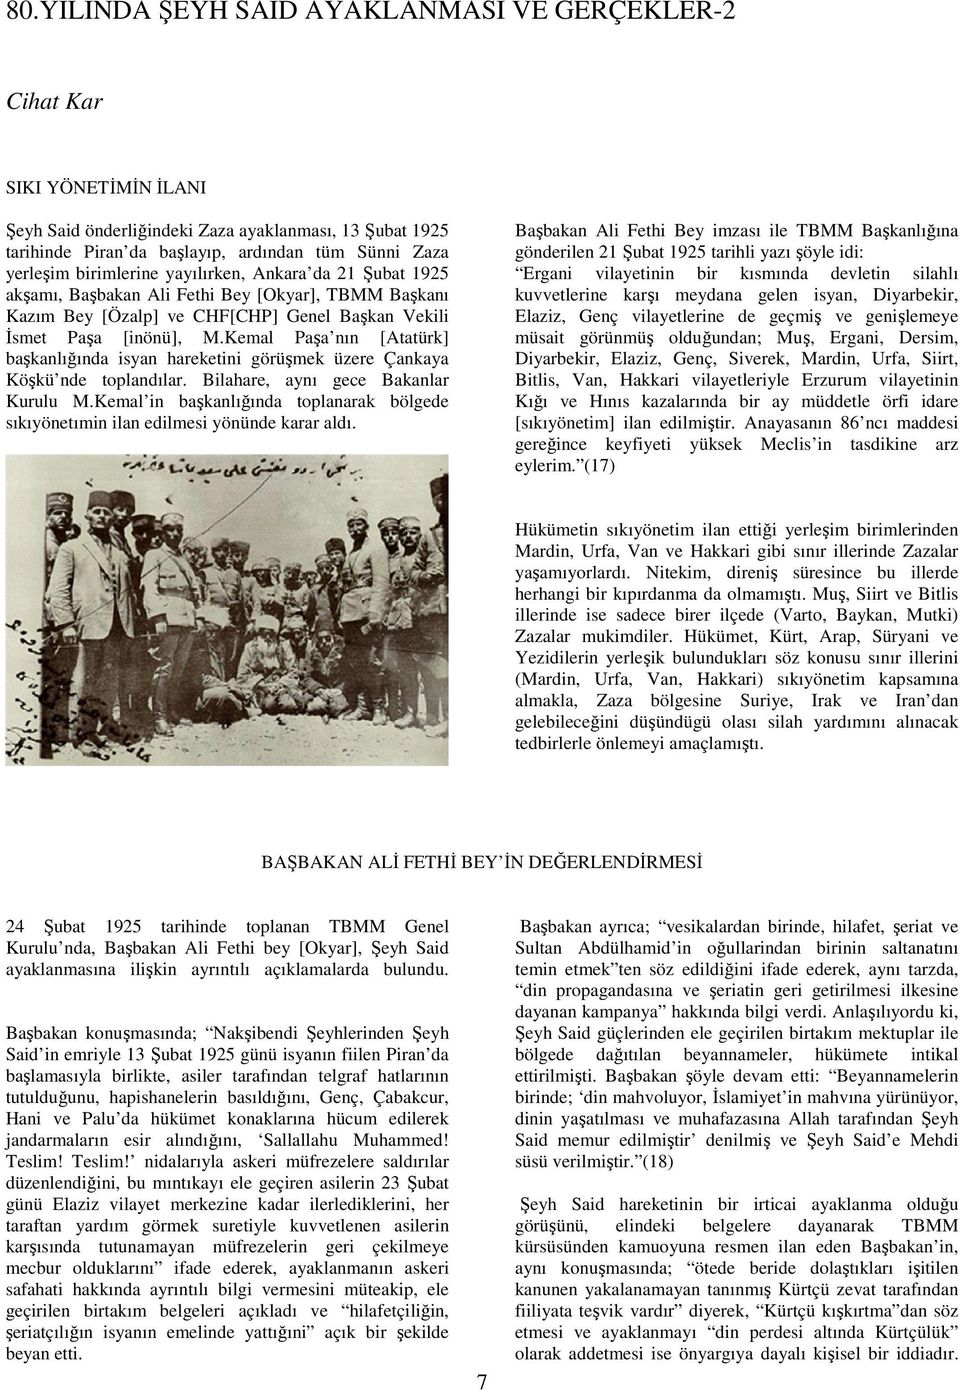 Kemal Paşa nın [Atatürk] başkanlığında isyan hareketini görüşmek üzere Çankaya Köşkü nde toplandılar. Bilahare, aynı gece Bakanlar Kurulu M.